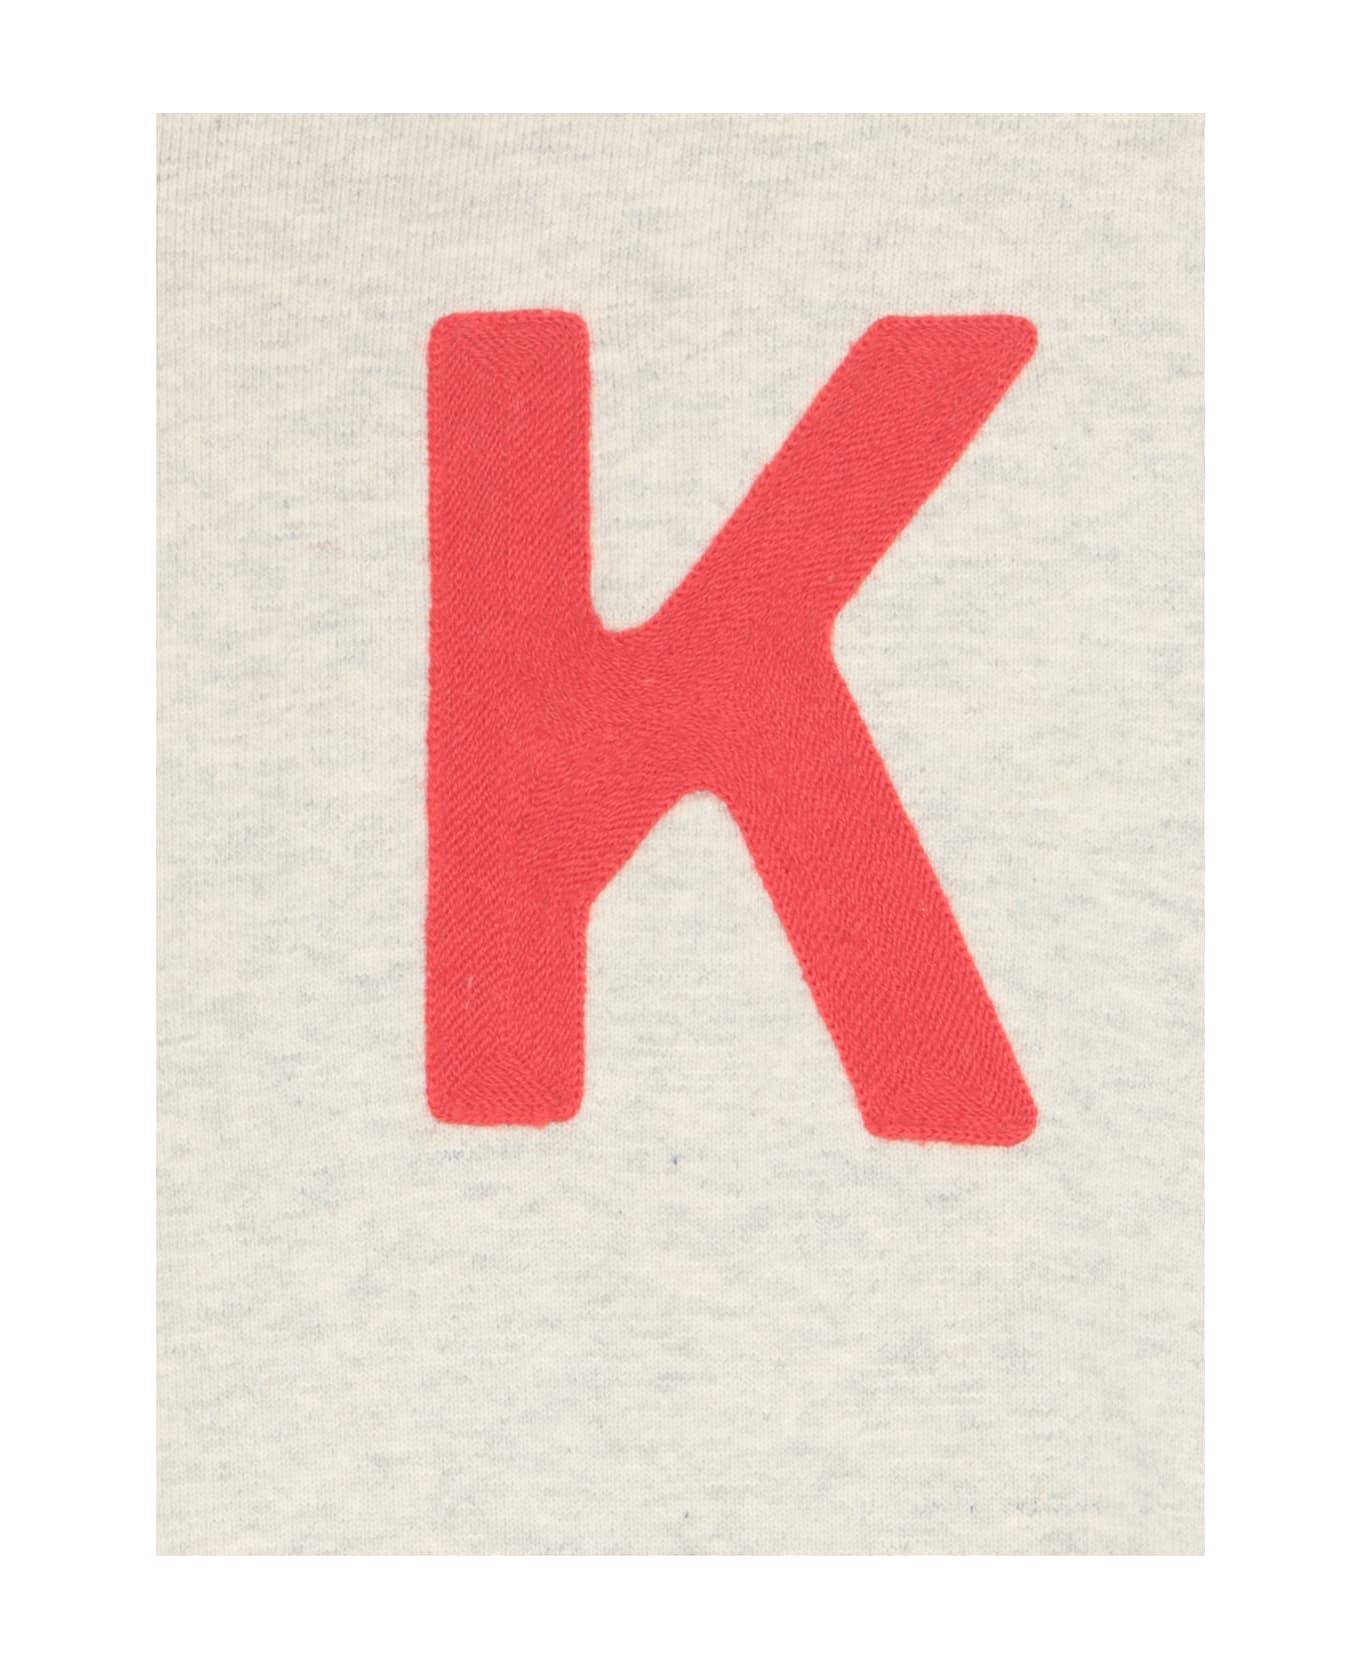 Kenzo Sweatshirt With Embroidery - Grey